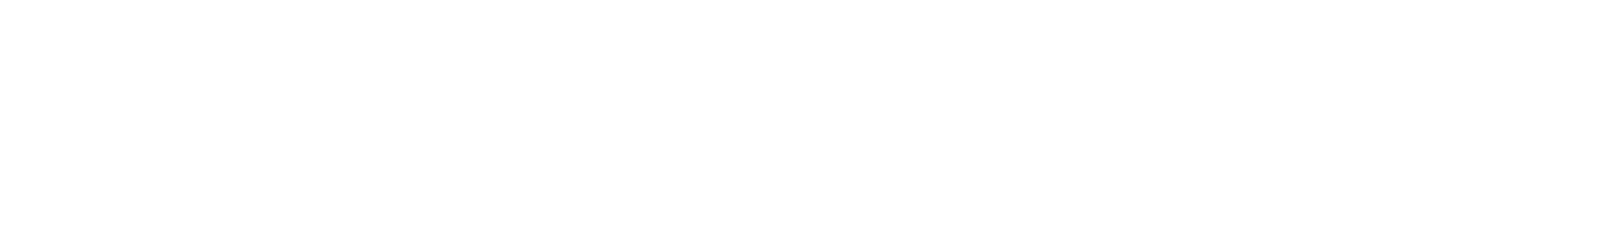 ZEAL LINK